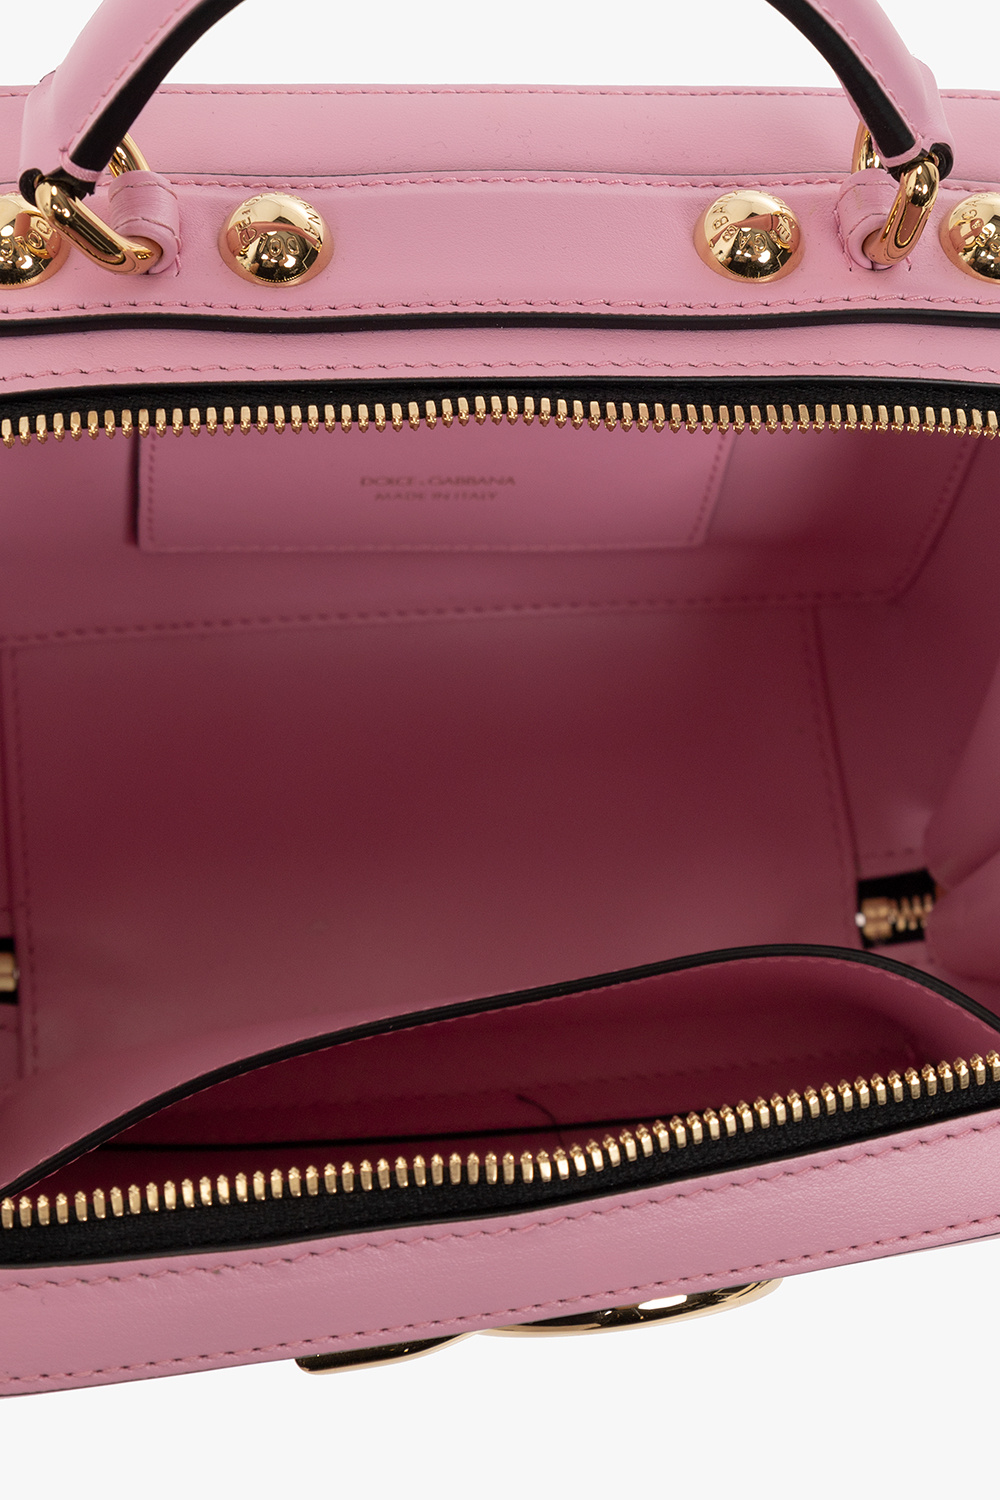 dolce Rosa & Gabbana ‘3.5’ shoulder bag